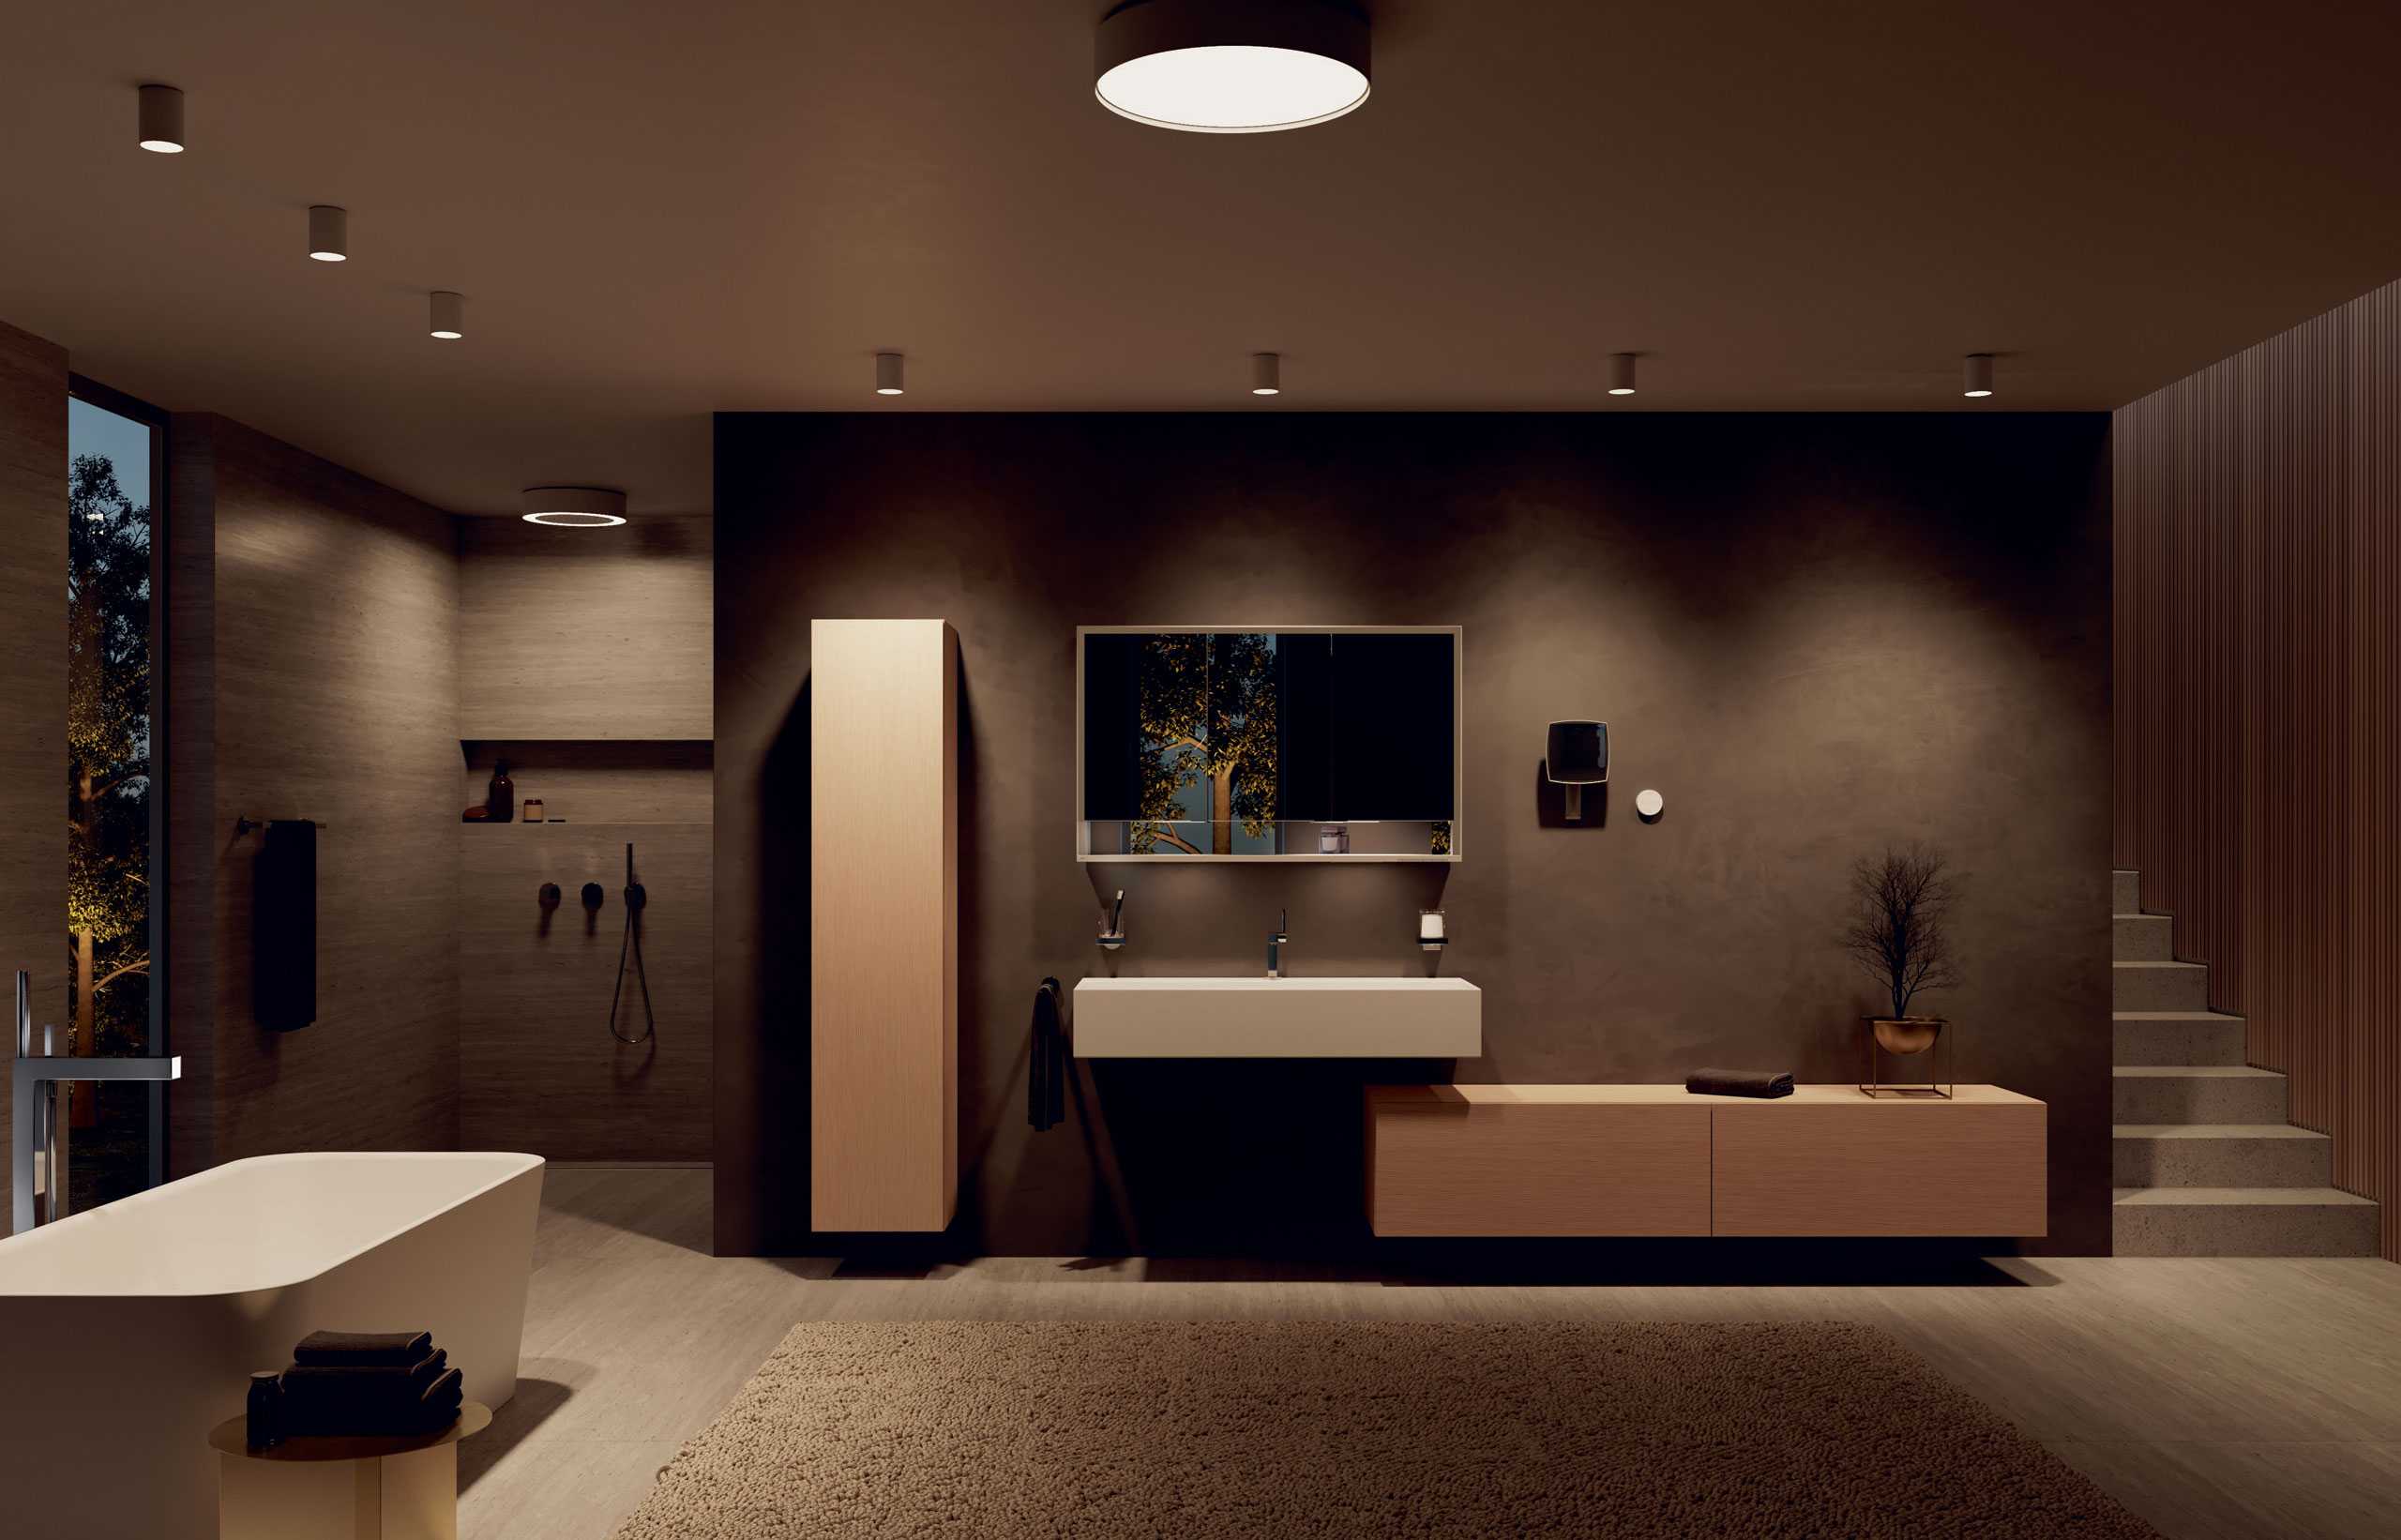 Как выбрать светильники для ванной комнаты - какие подходят по нормам и как правильно установить светильники в ванной комнате (105 фото)